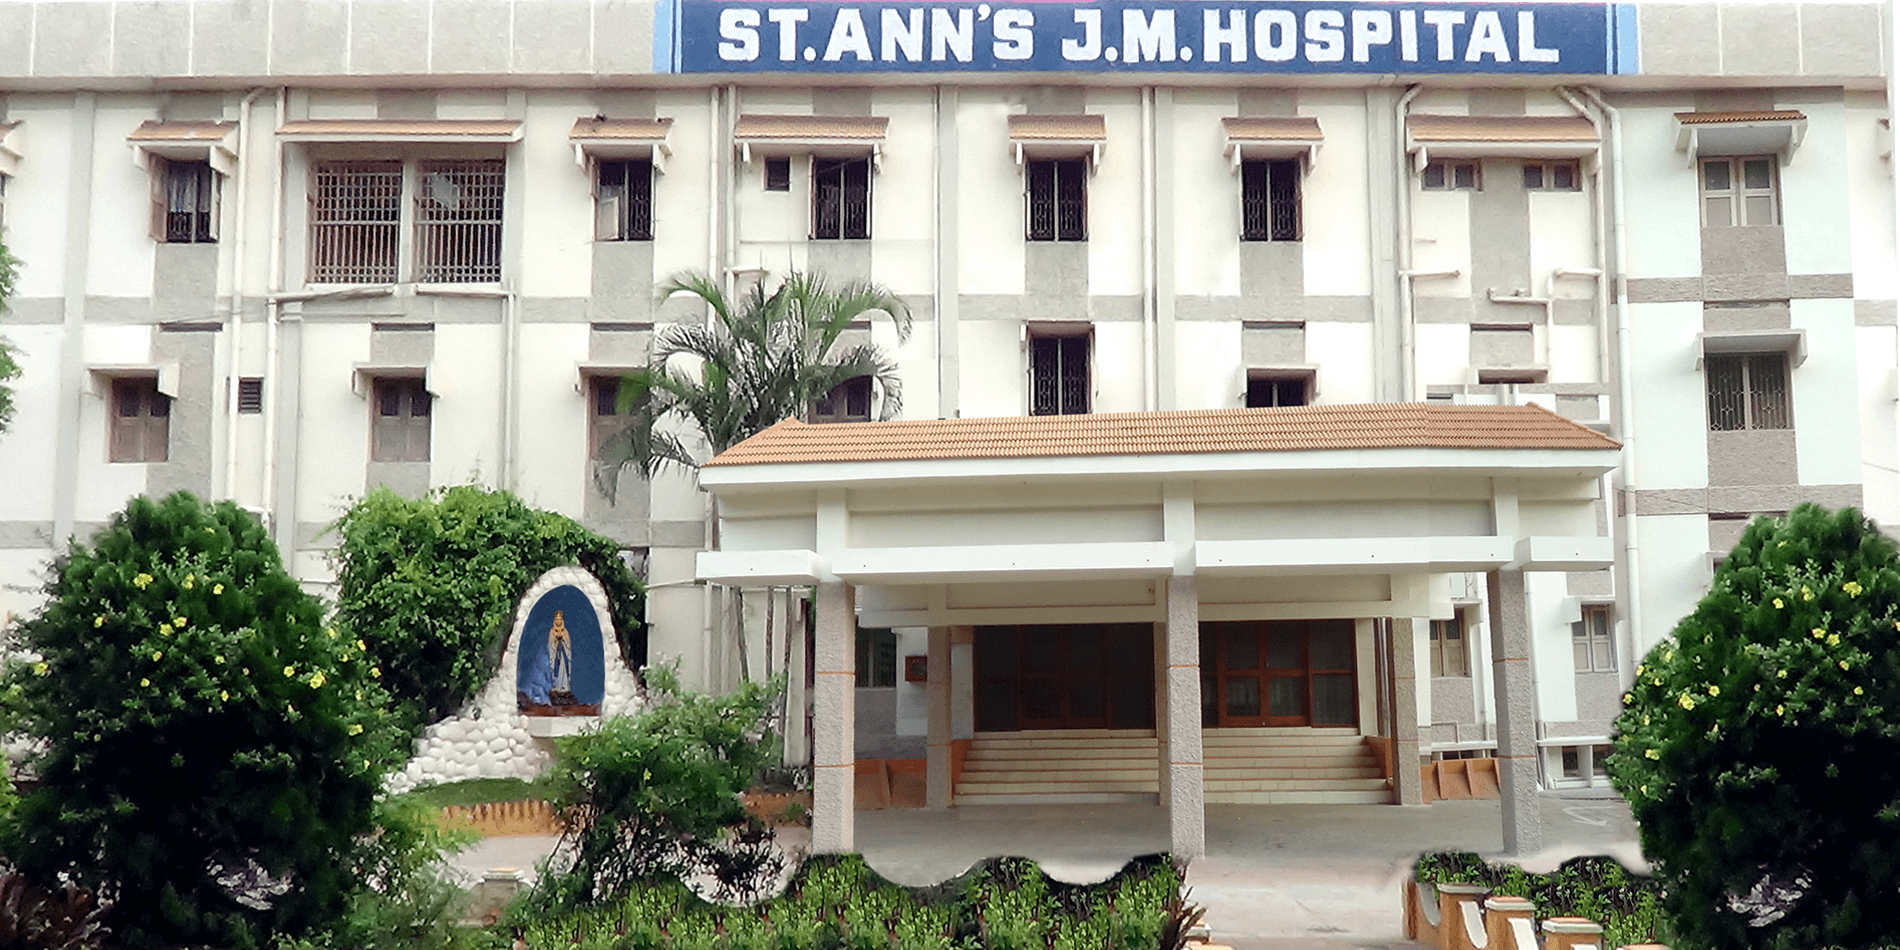  St.Ann’s Jubilee Memorial Hospital